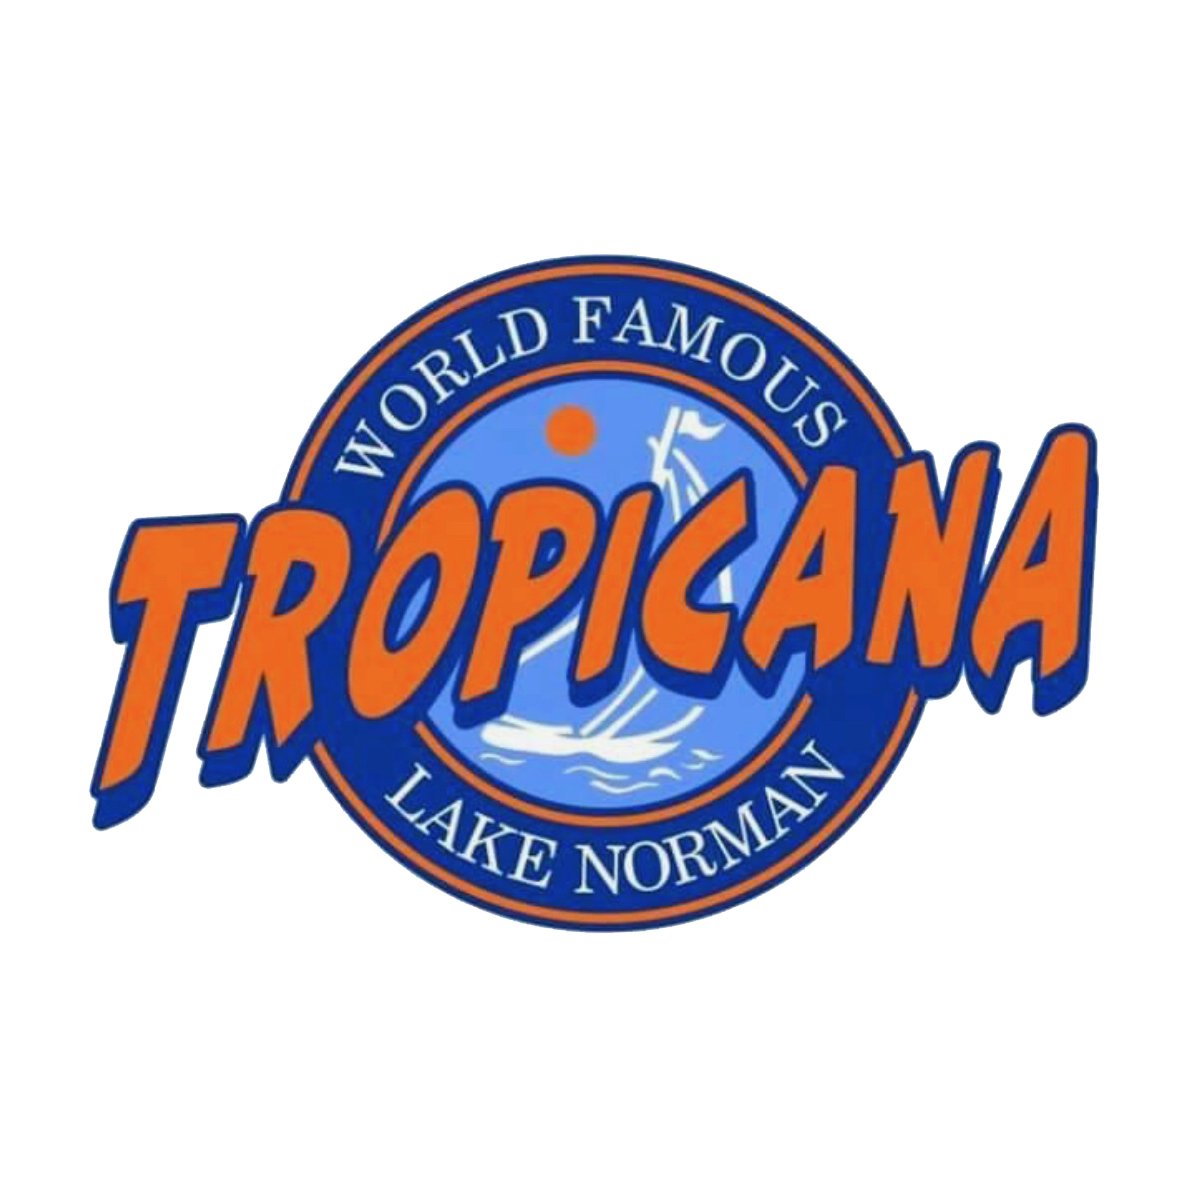 Tropicana logo.jpg